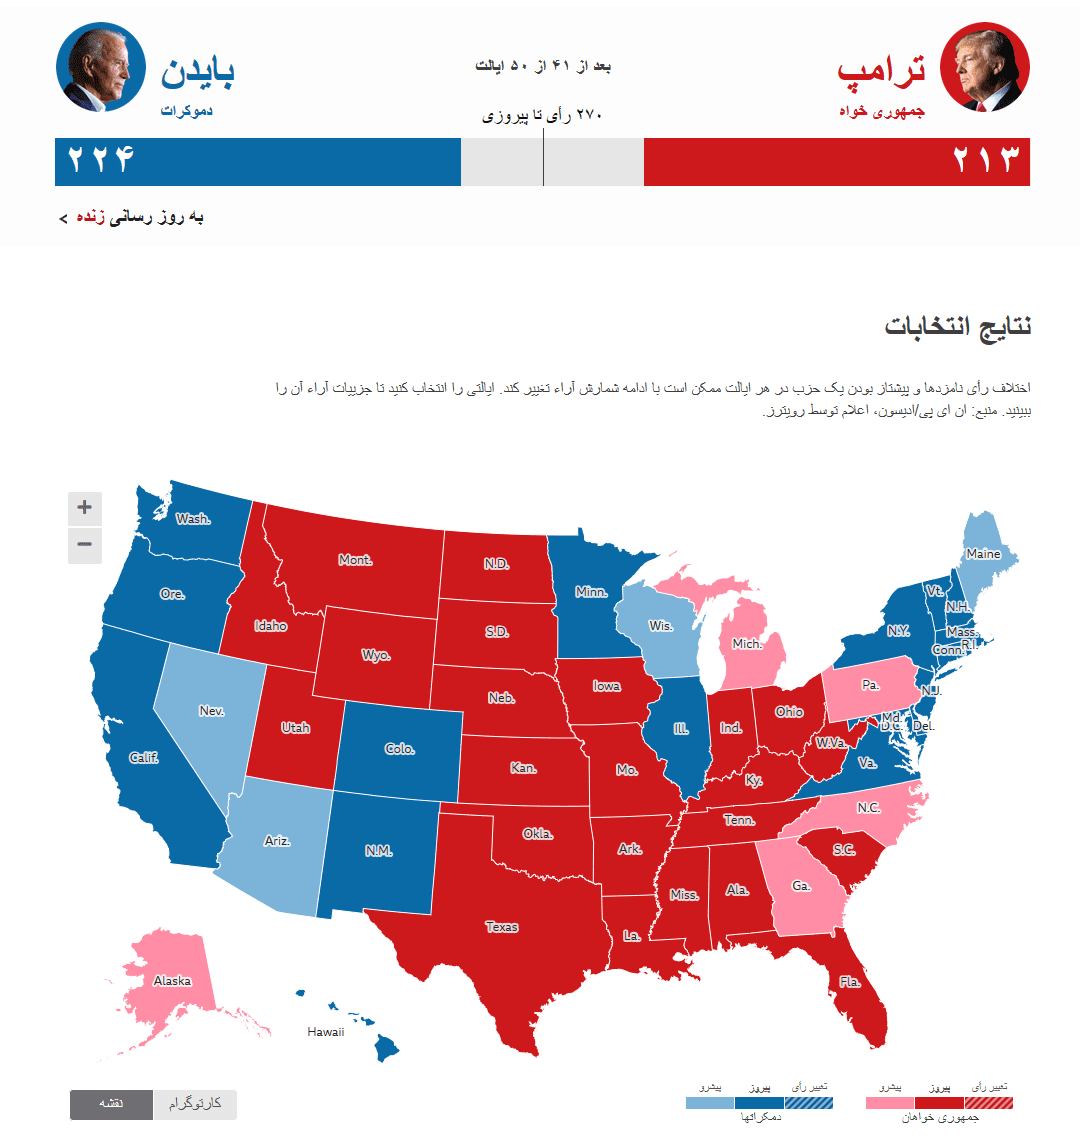 نتایج شمارش اراء انتخابات آمریکا (بروز می شود)